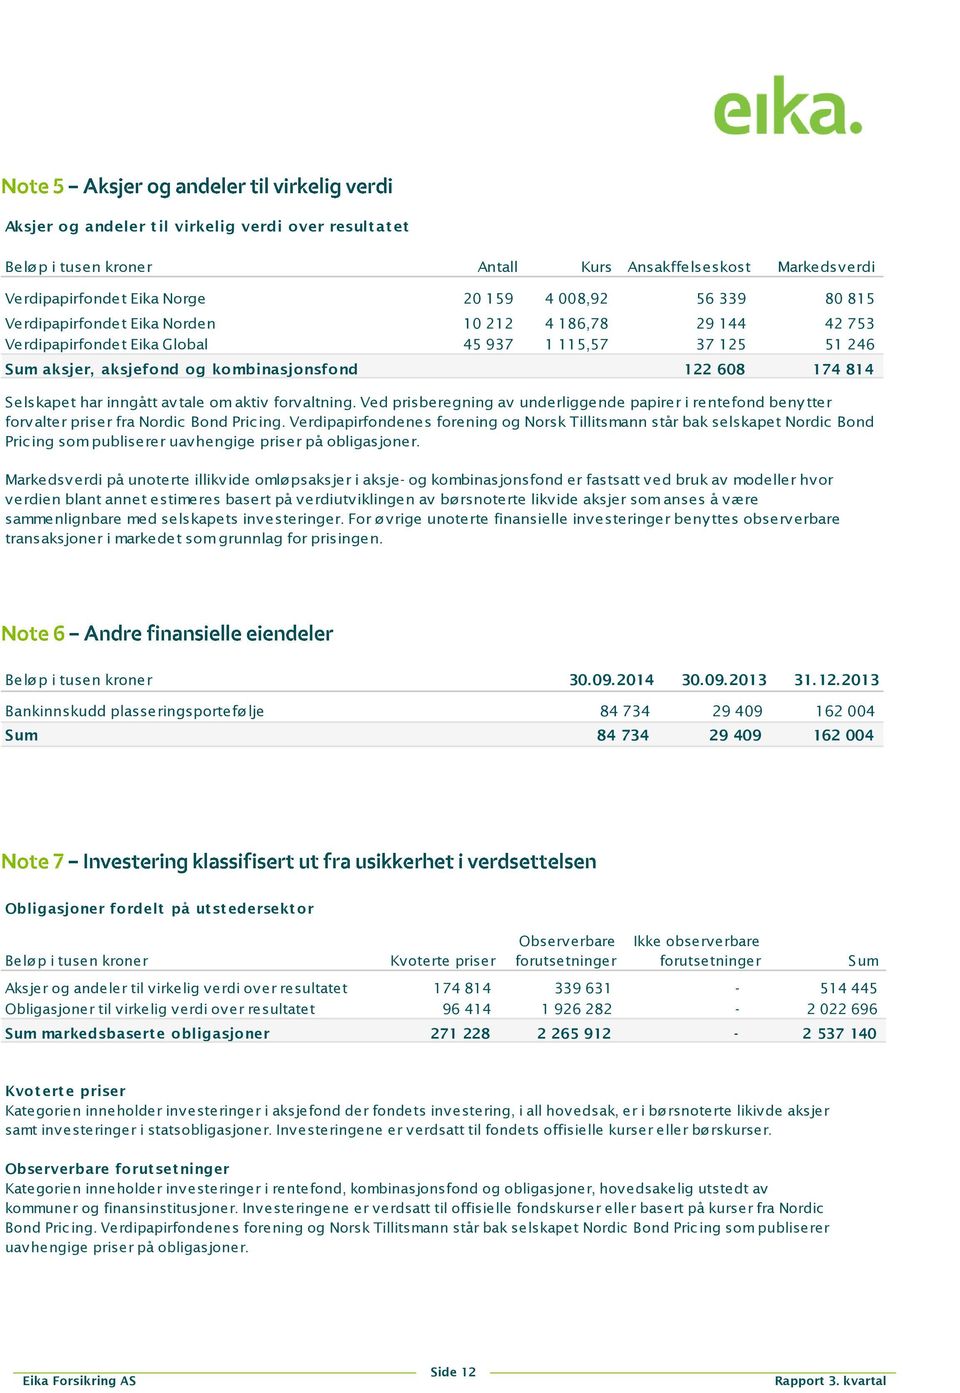 forvaltning. Ved prisberegning av underliggende papirer i rentefond benytter forvalter priser fra Nordic Bond Pricing.